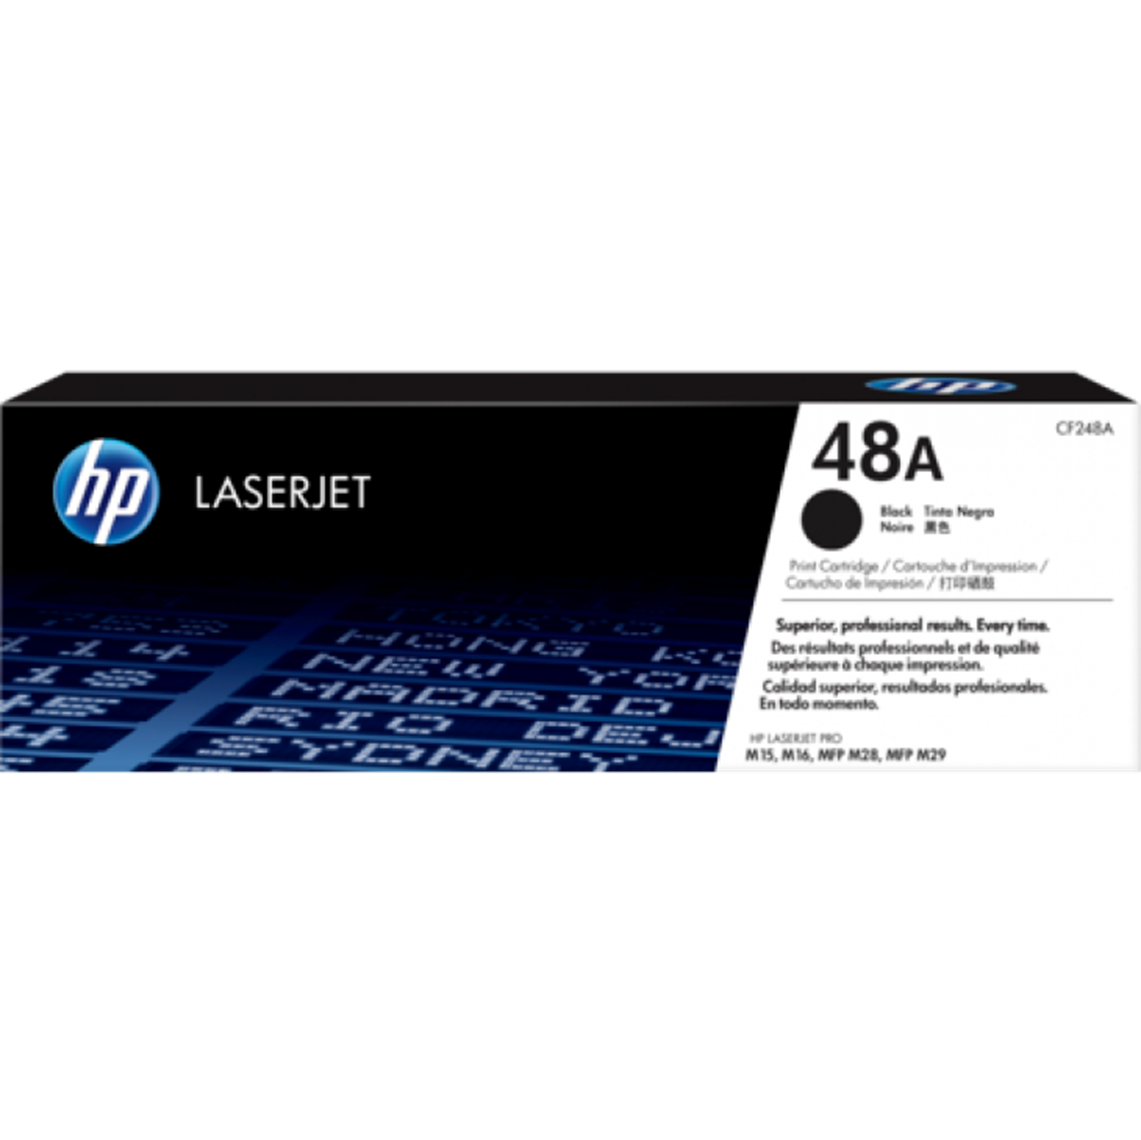 HP LaserJet Pro MFP M28w代用碳粉規格